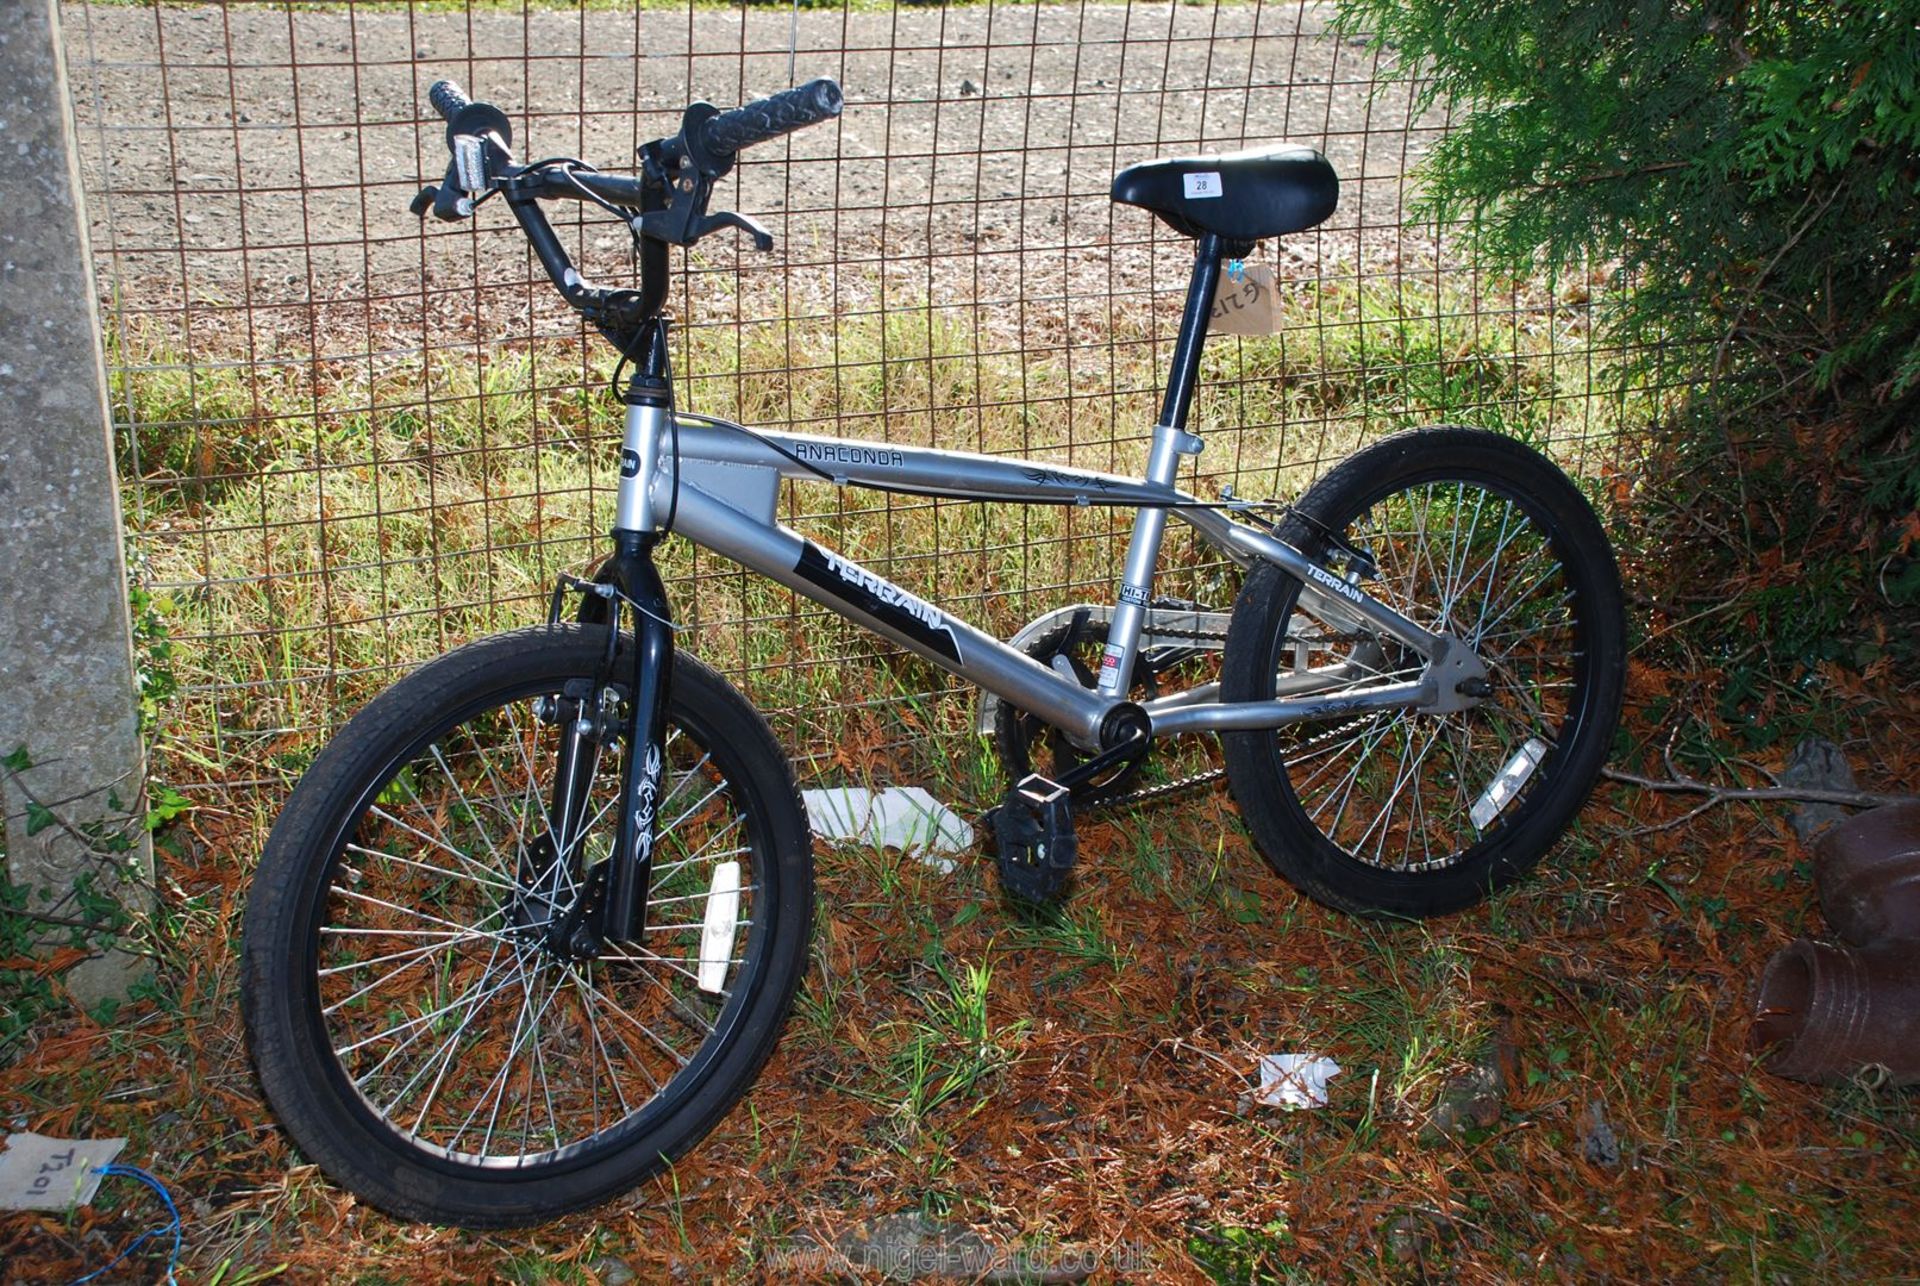 Anaconda Terrain bike